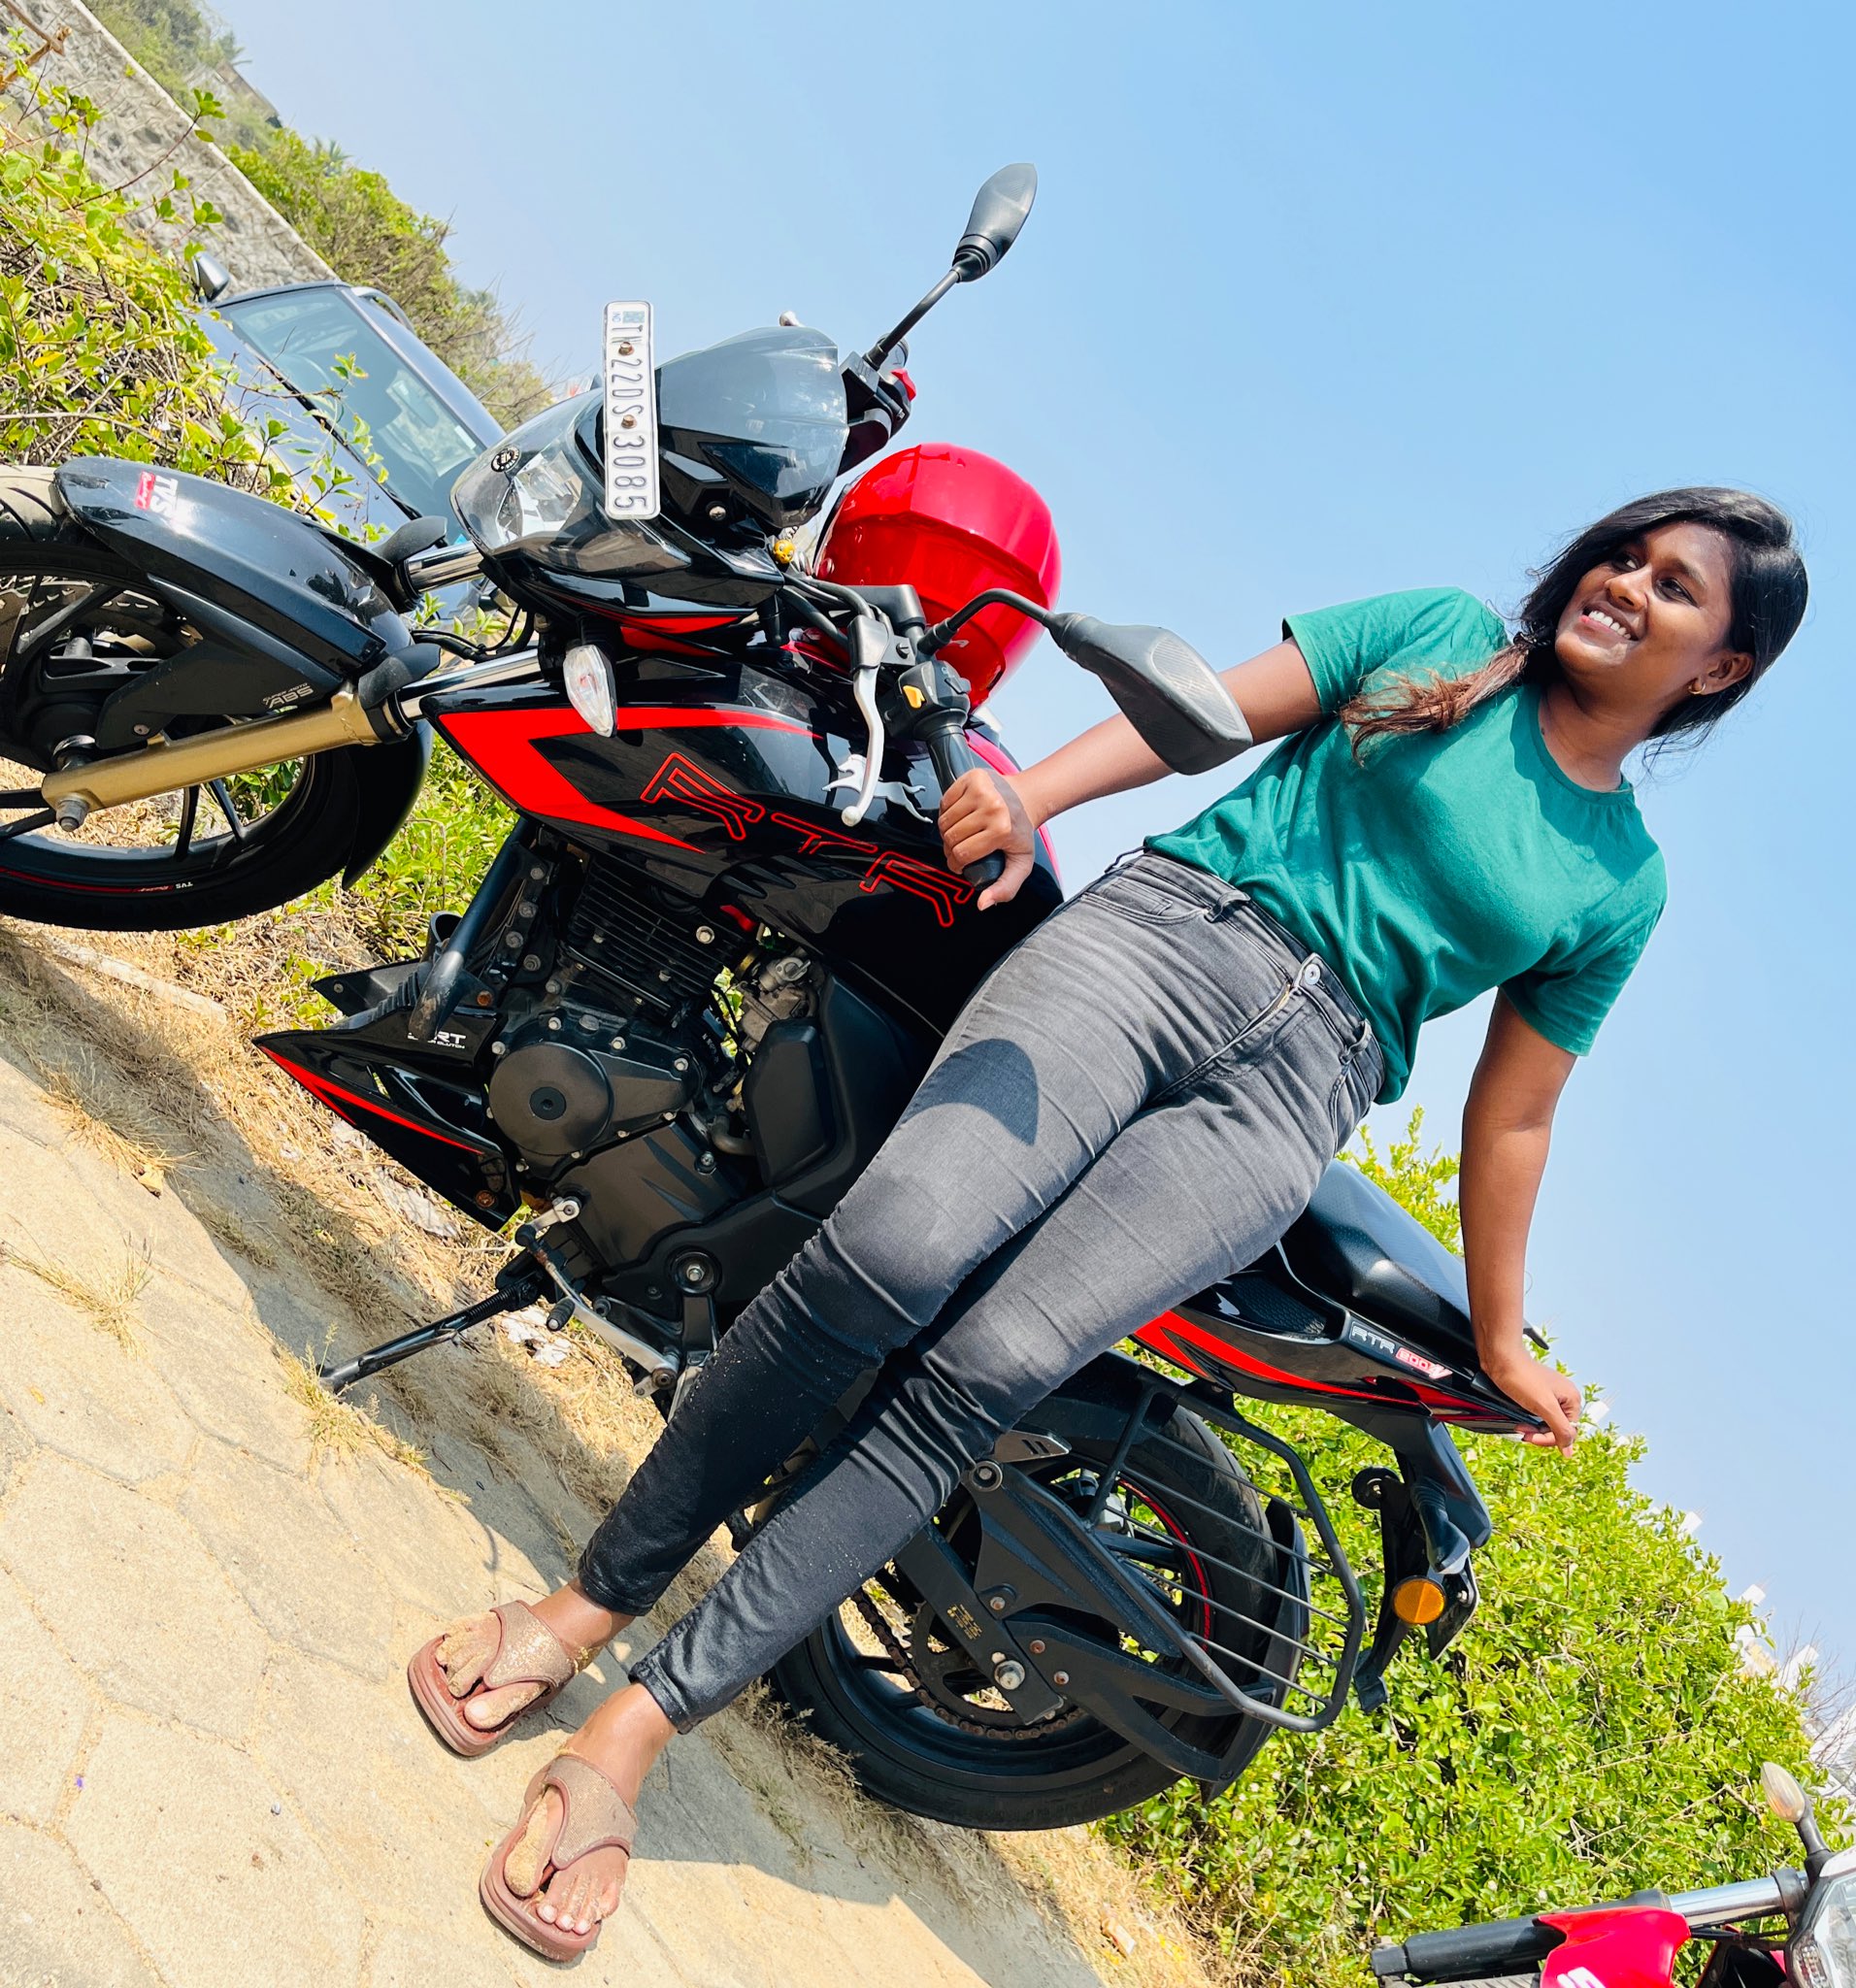 Girl on a motorcycle | Biker photoshoot, Biker girl, Bike photoshoot